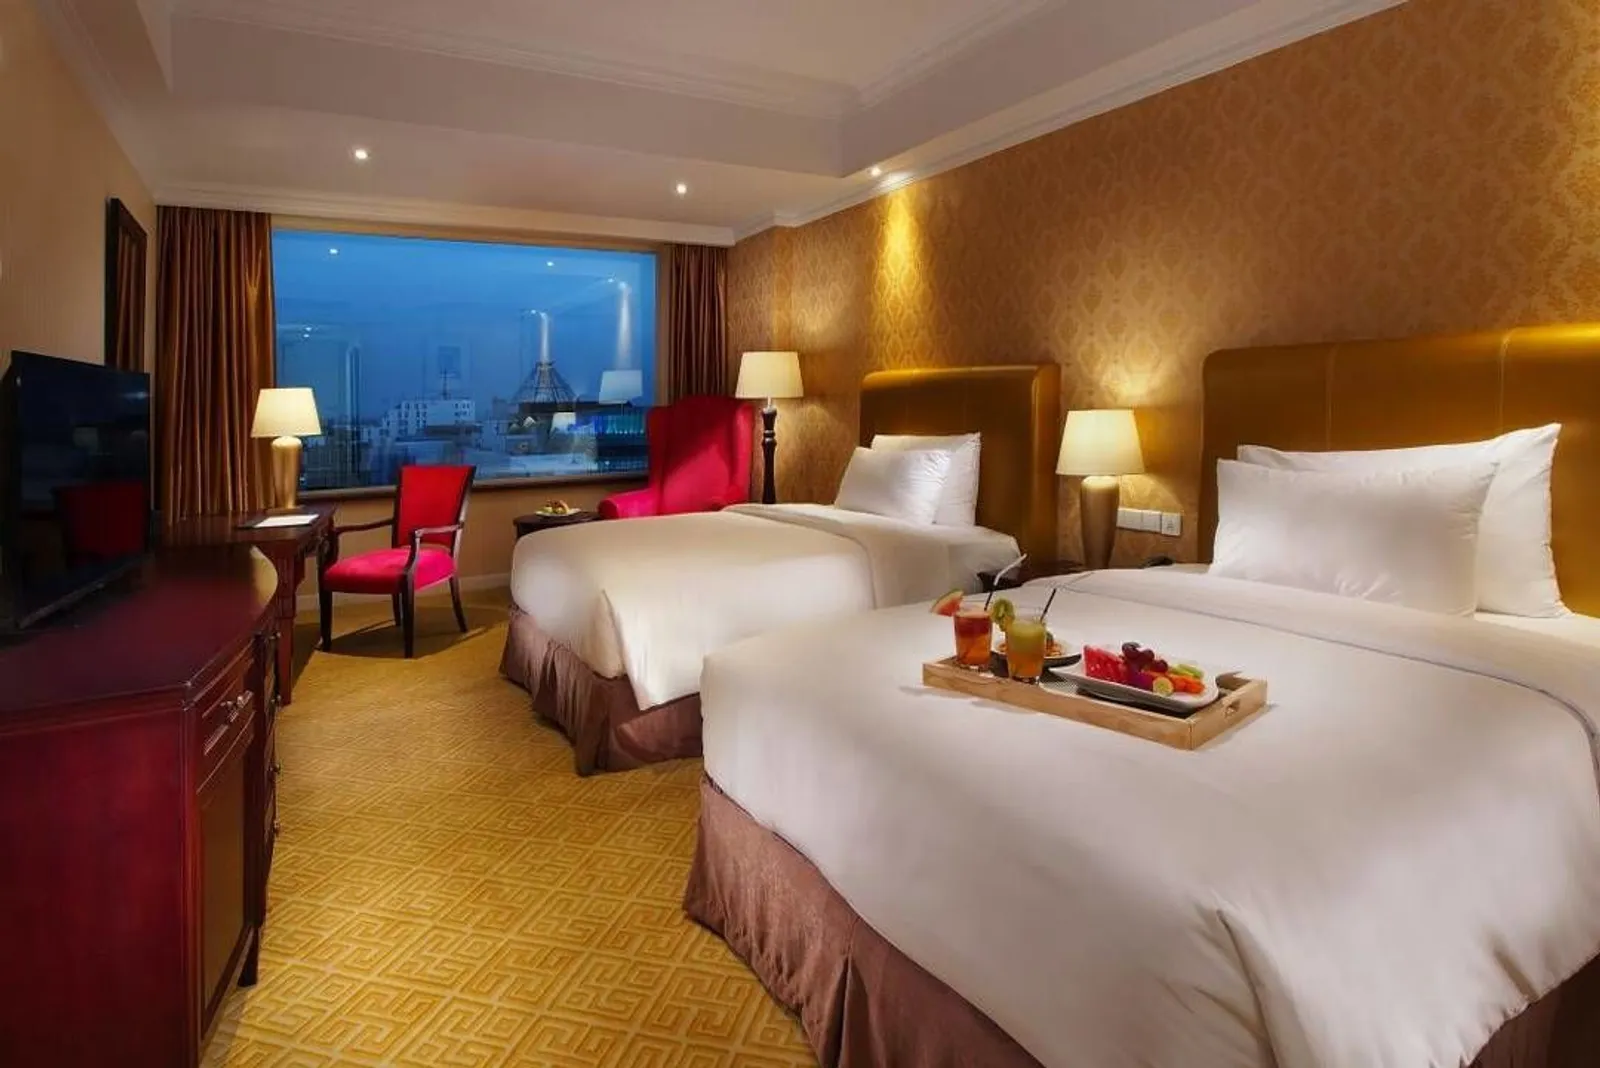 5 Rekomendasi Hotel di Medan dengan Harga Mulai Rp200 Ribu